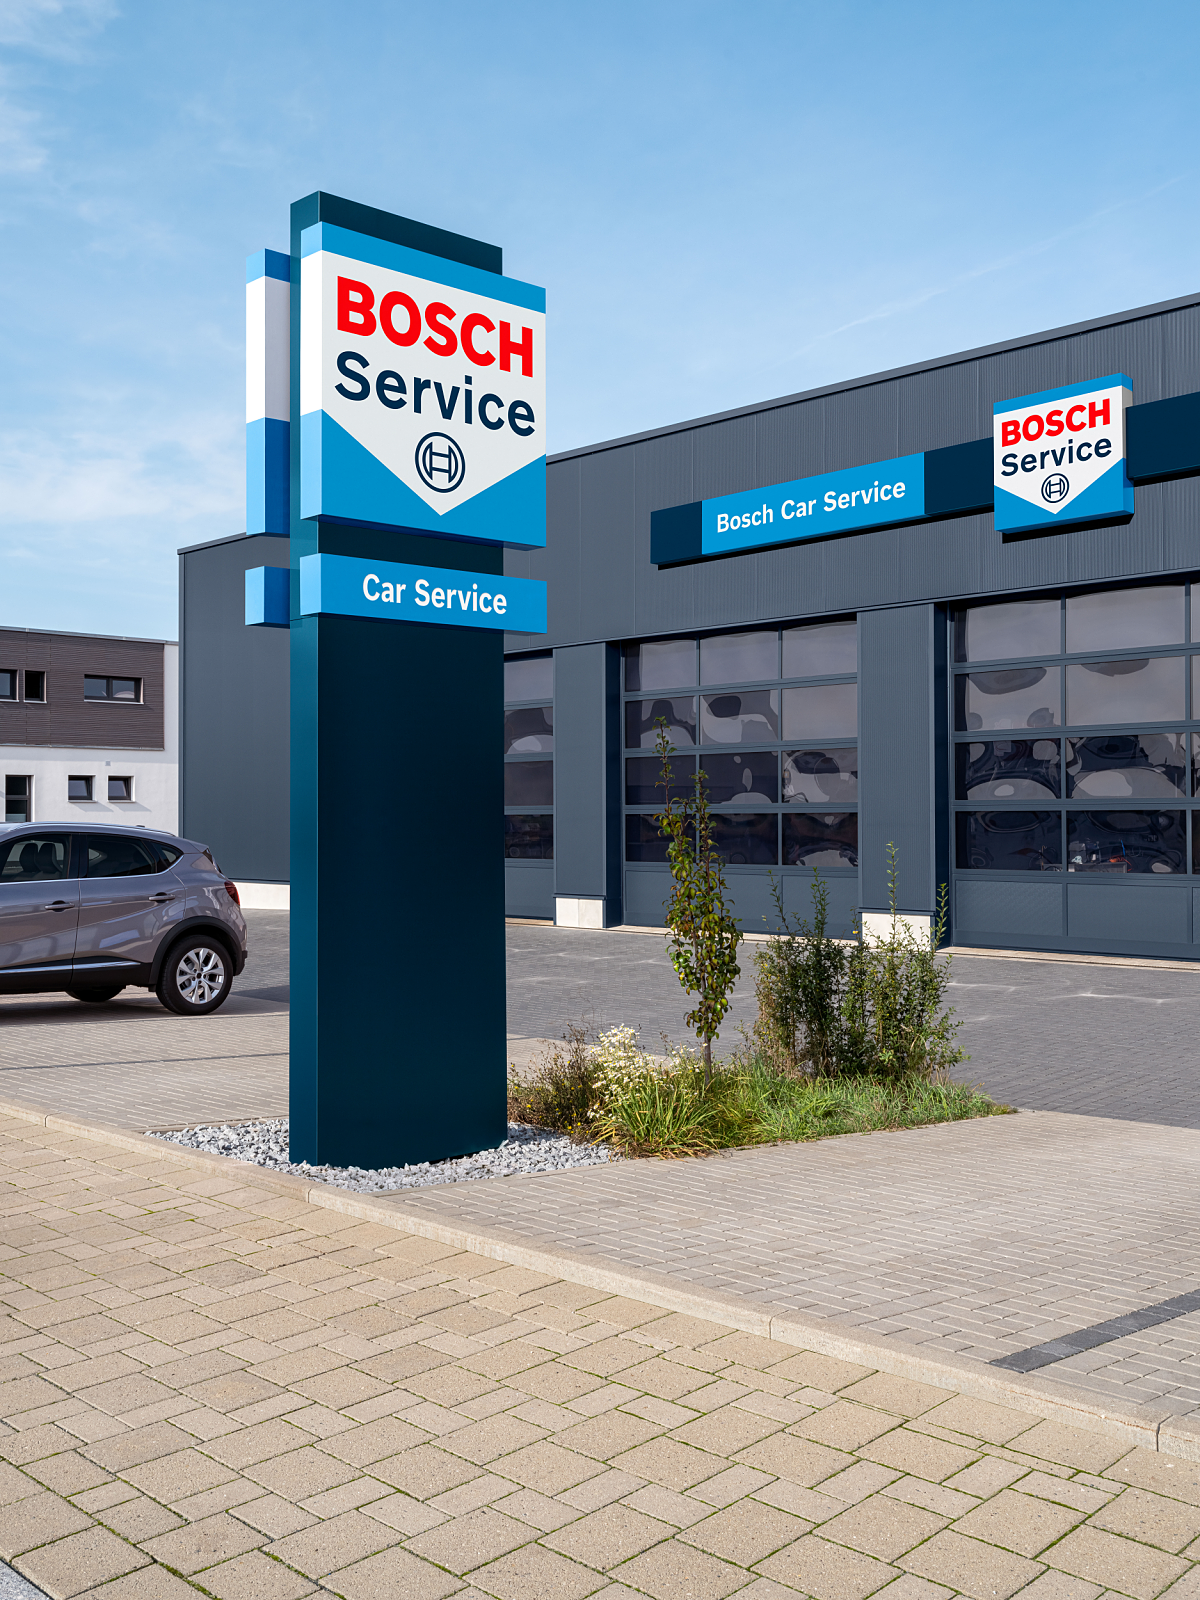 Bosch Car Service ist mit rund 15 000 Betrieben in 150 Ländern das weltweit größte markenunabhängige Werkstatt-Netzwerk. 